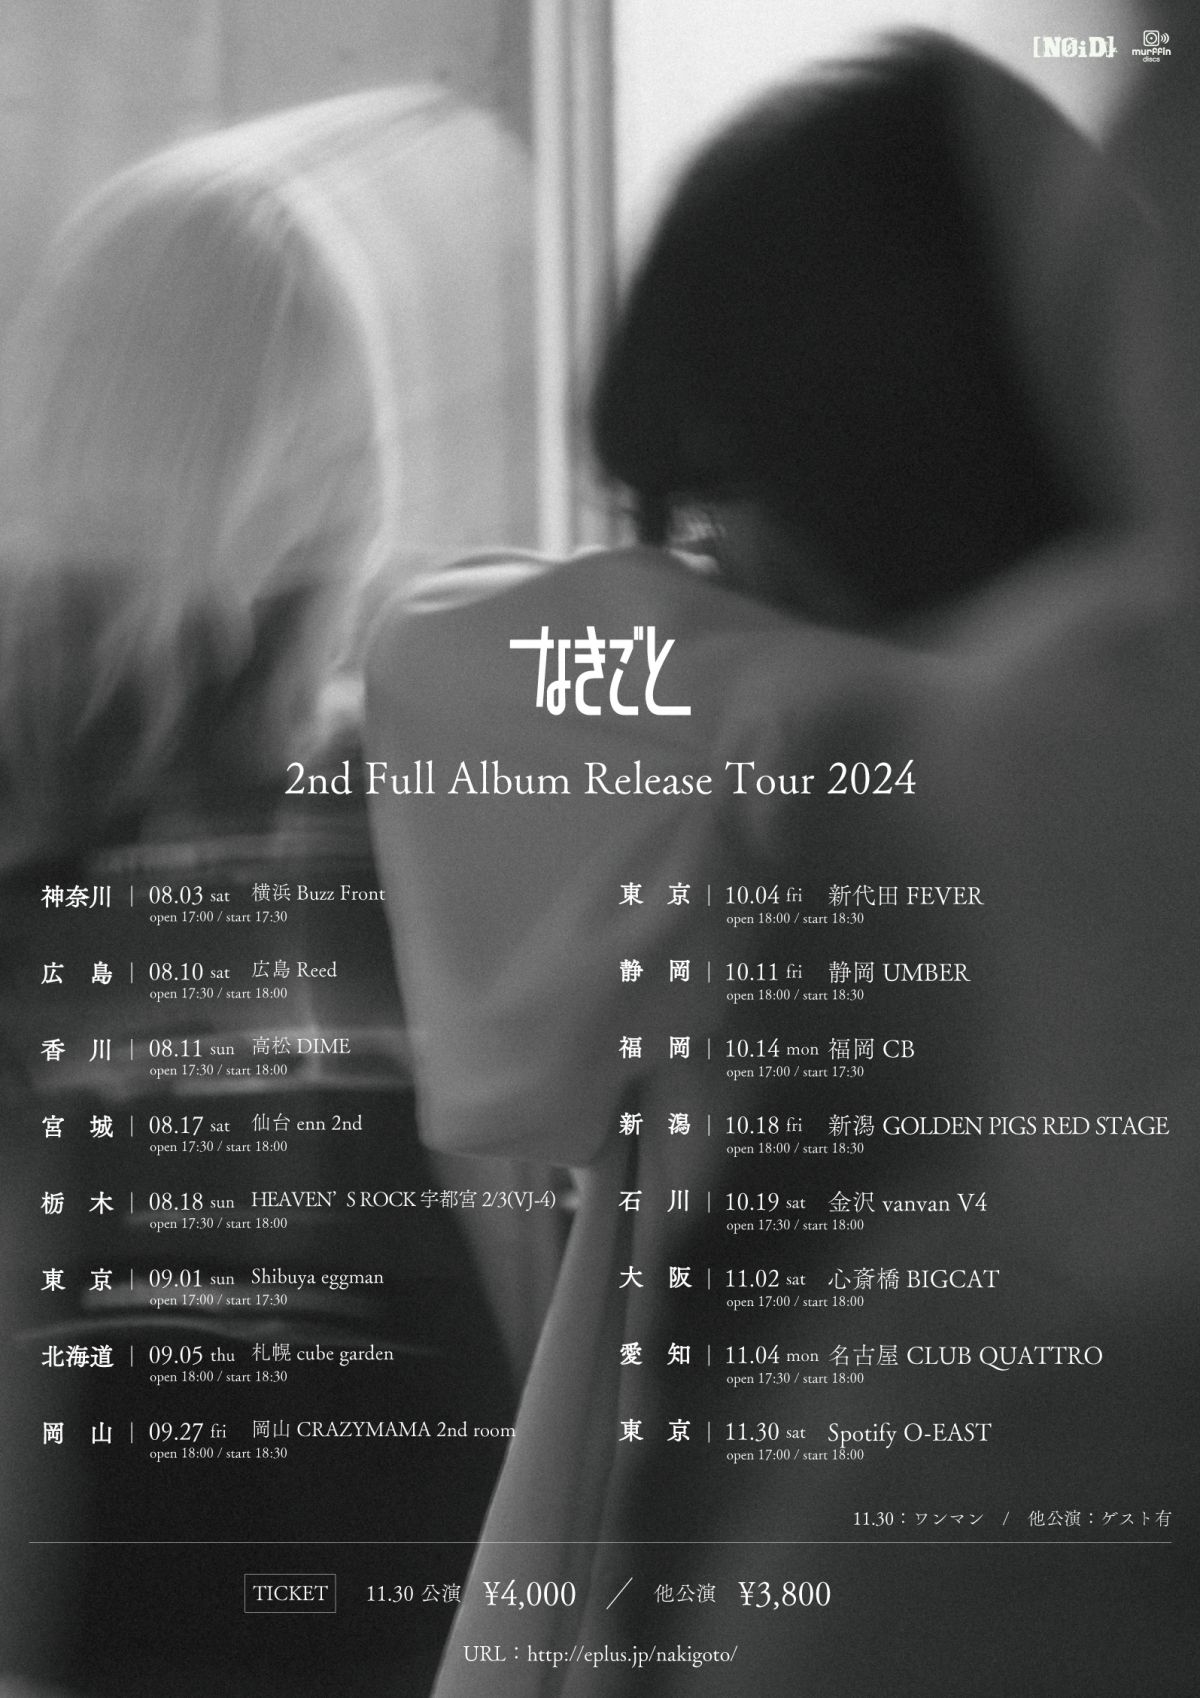 2nd Full Album Release Tour 2024